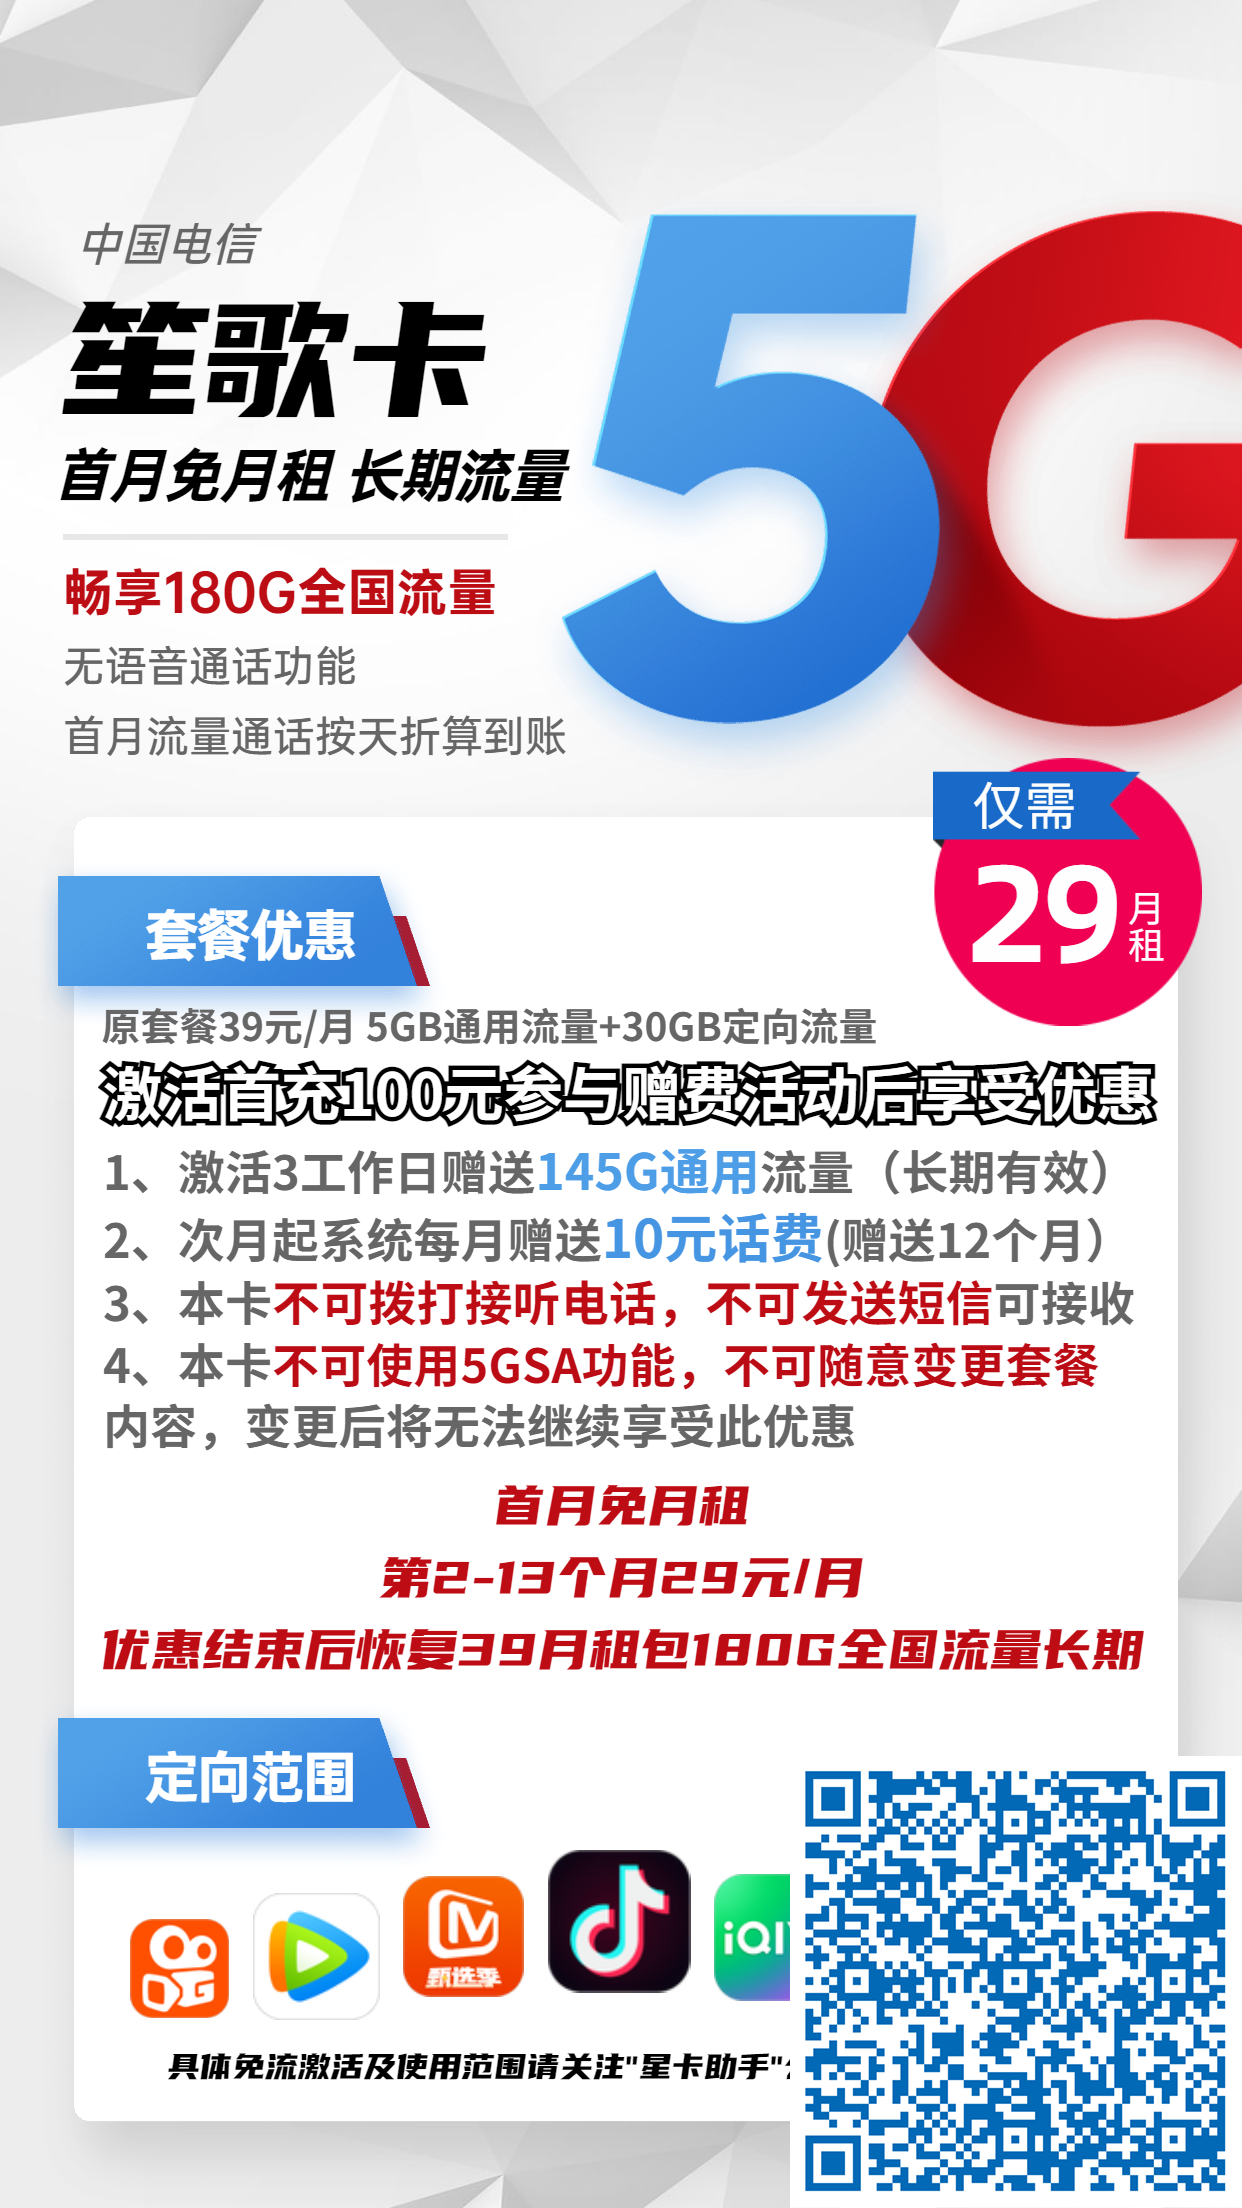 北京电信笙歌卡29元月包150G通用流量+30G定向流量+无语音功能